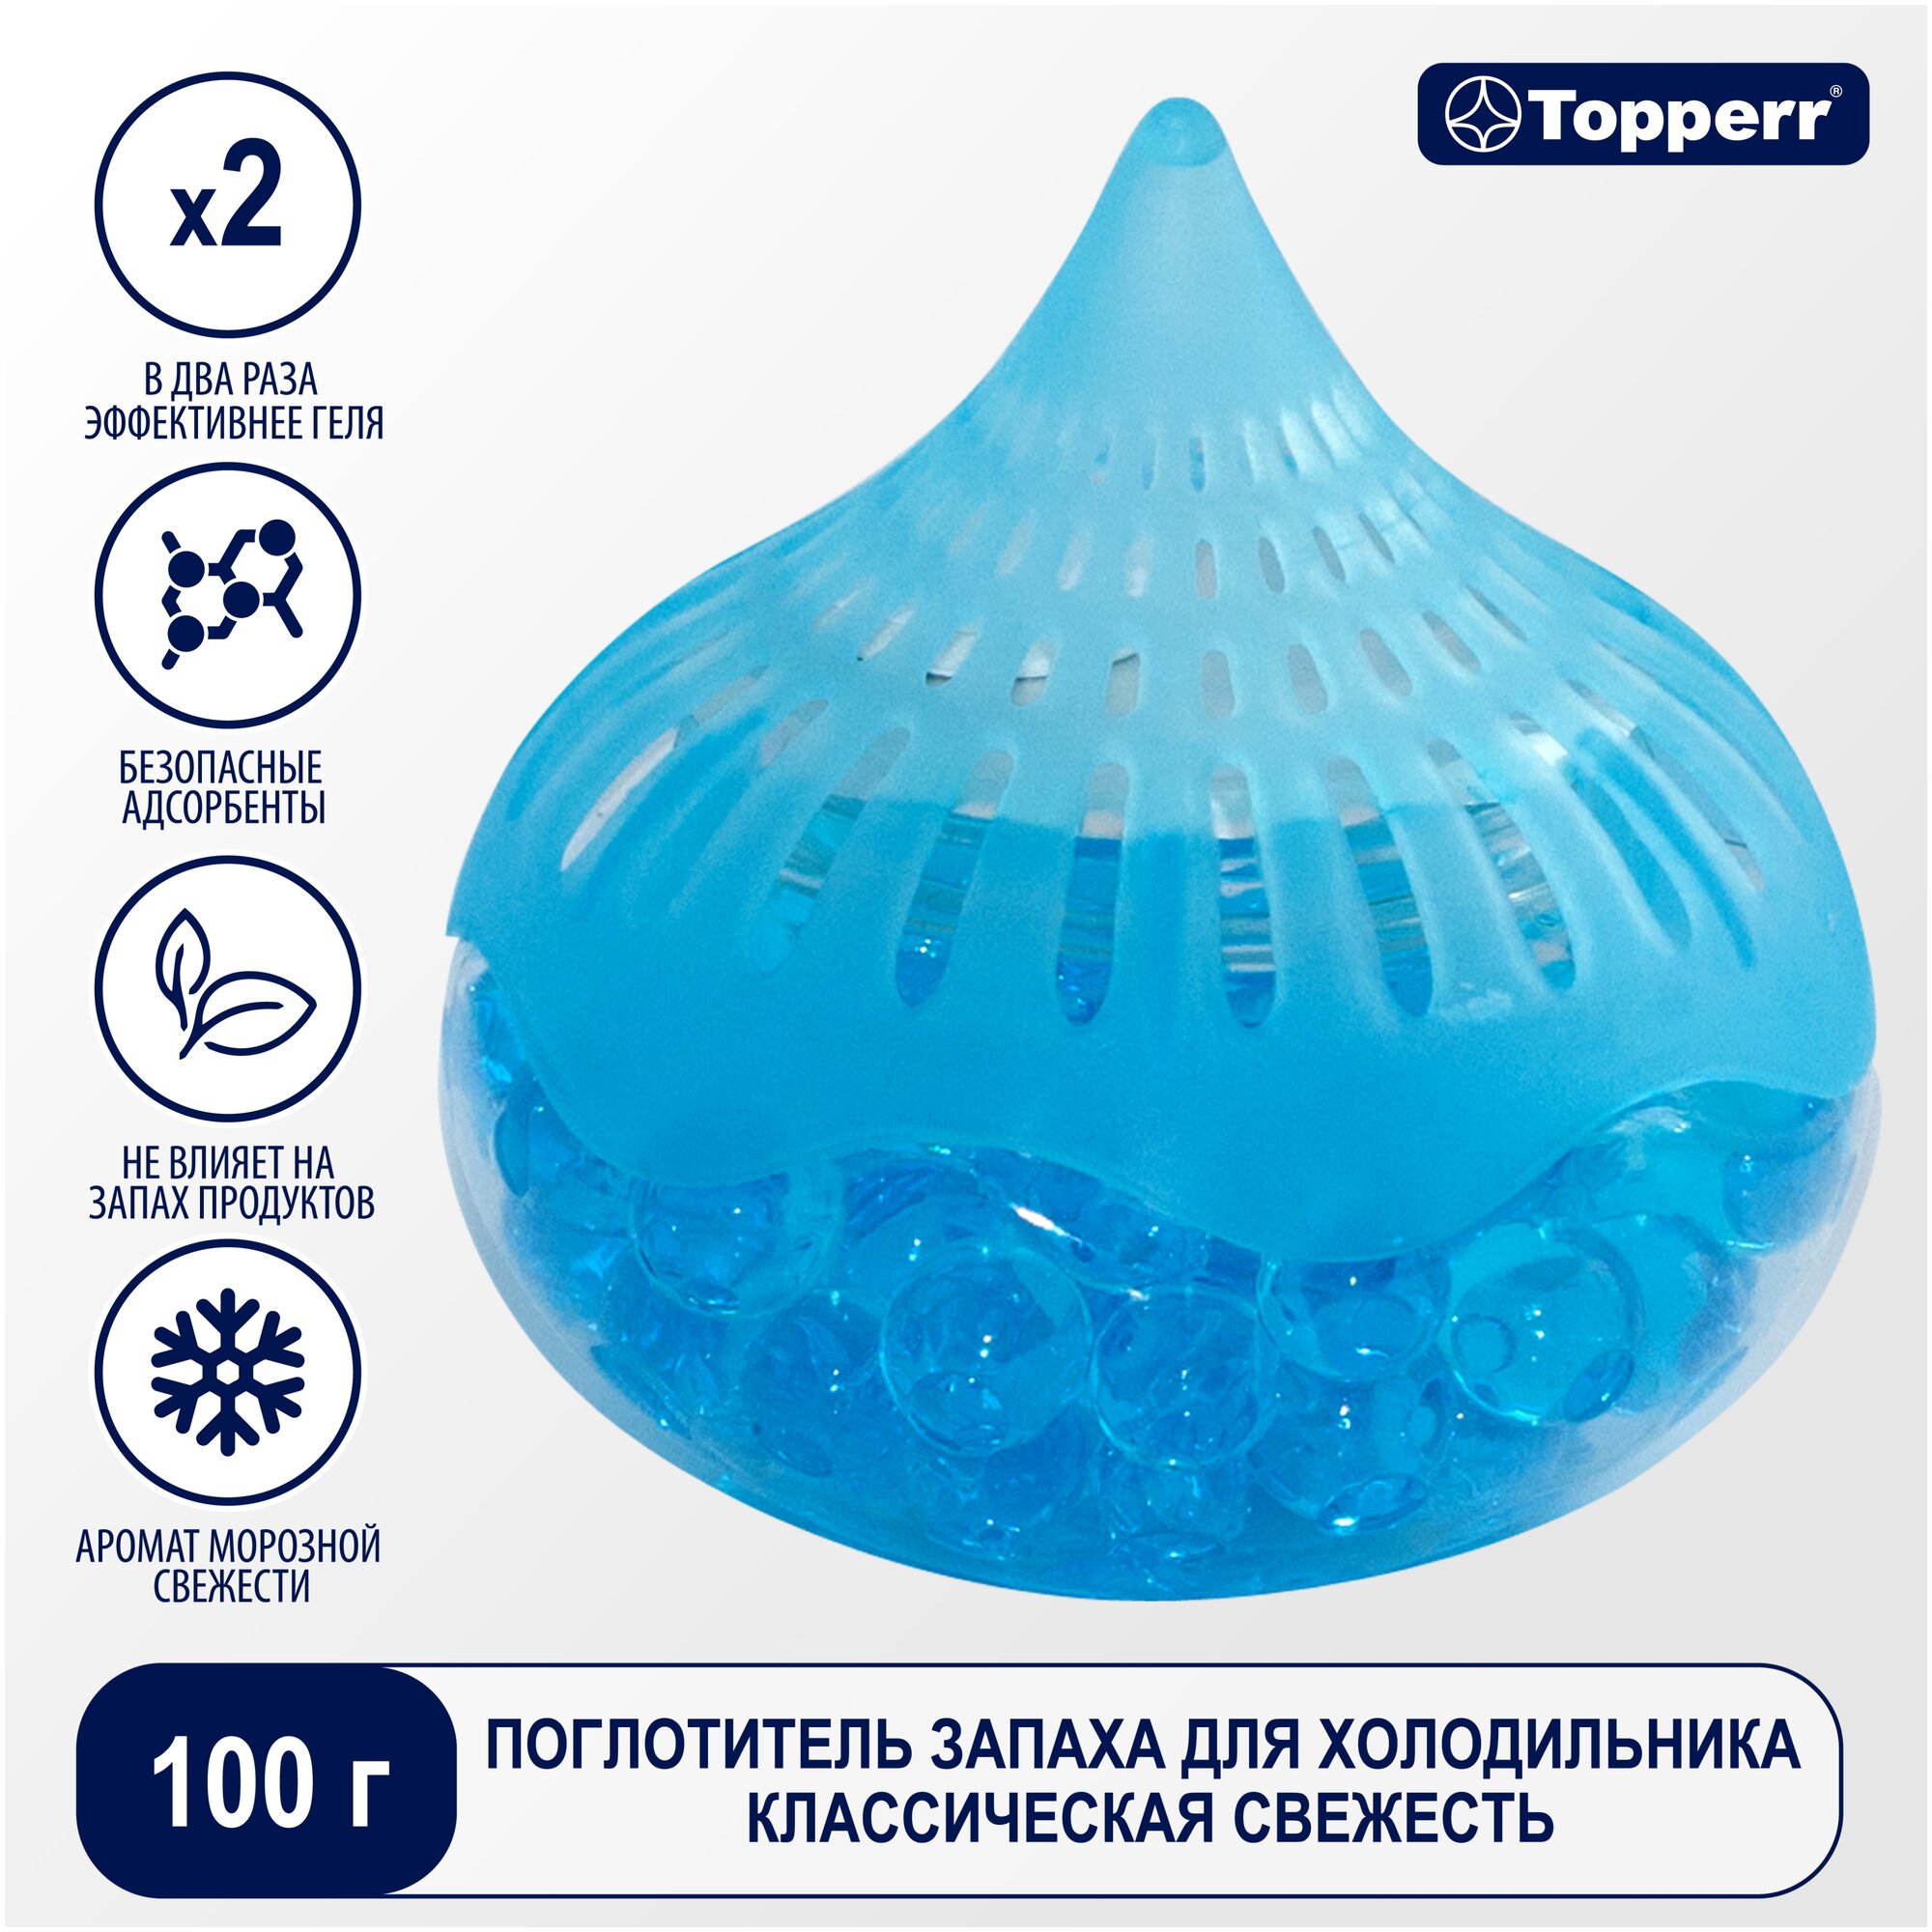 Поглотитель запаха для холодильника Topperr гелевый Голубой лед